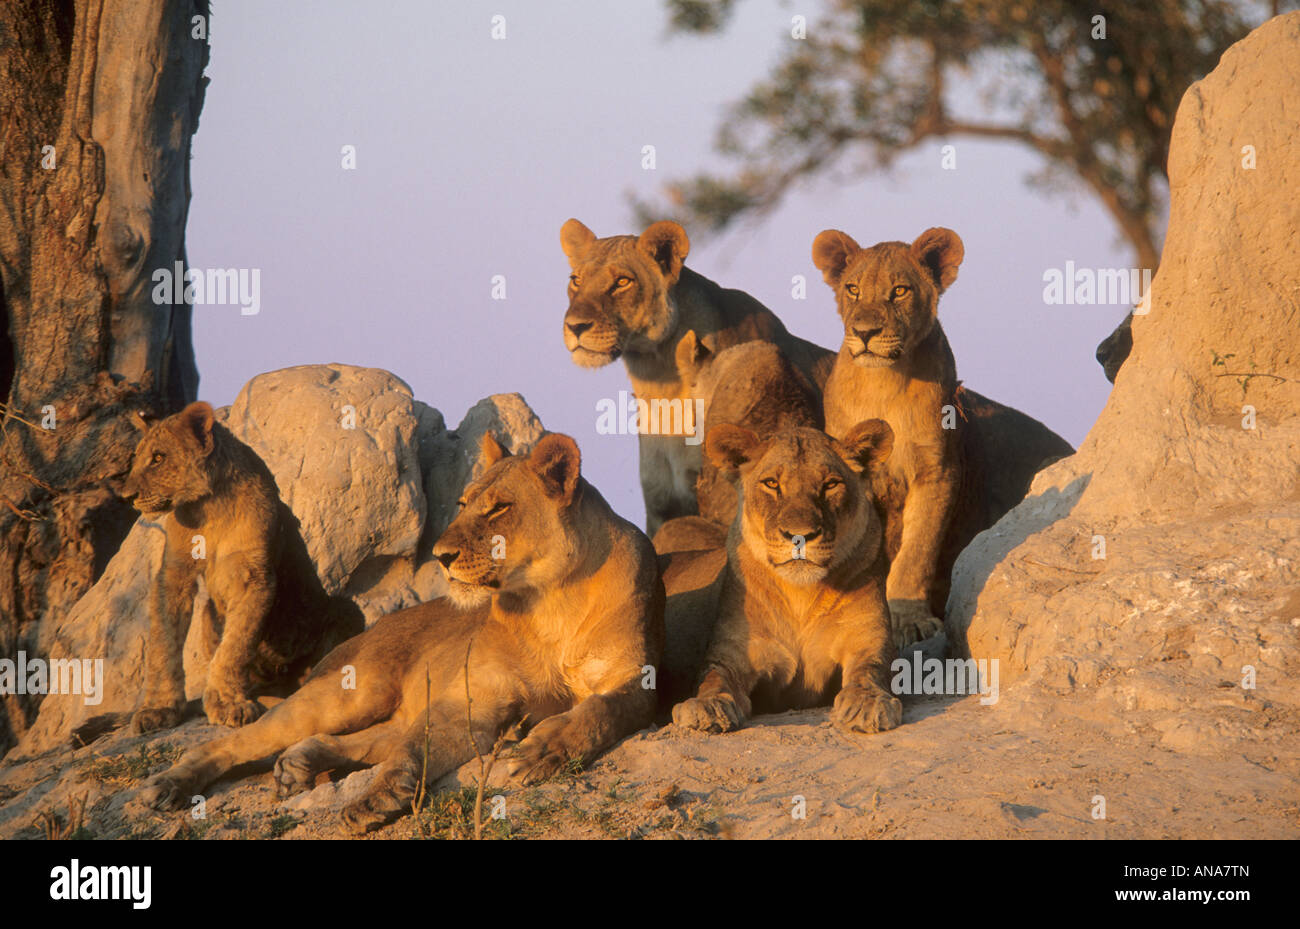 Lion (Panthera leo) de fierté à termitière dans la lumière de l'après-midi chaud Banque D'Images